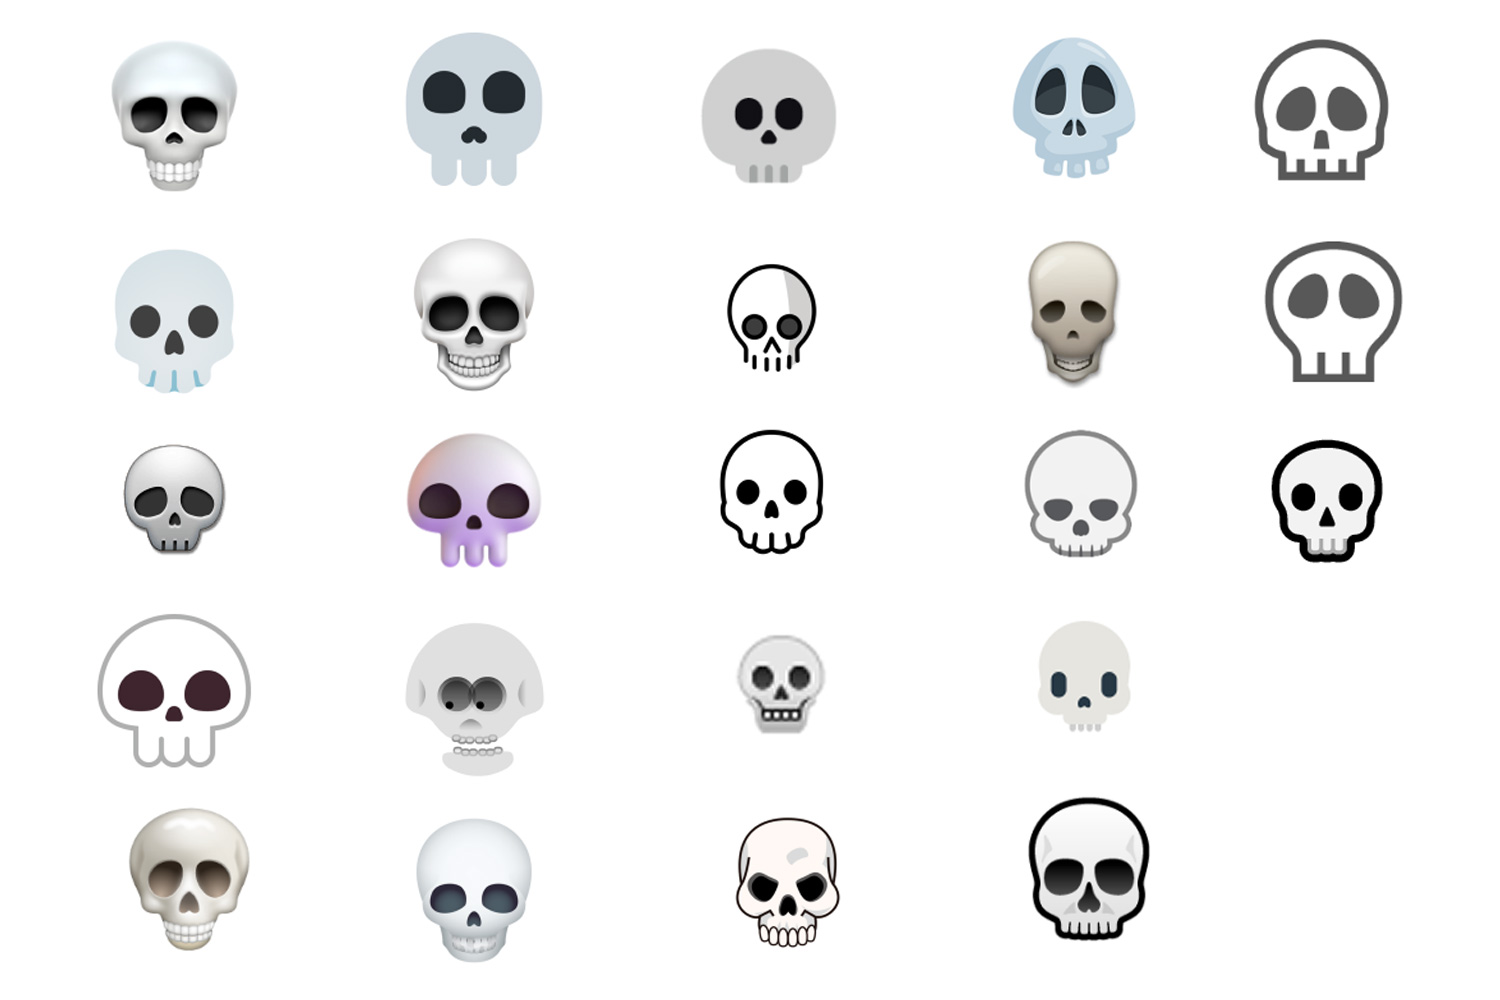 El emoji de calavera representa la muerte simbólica